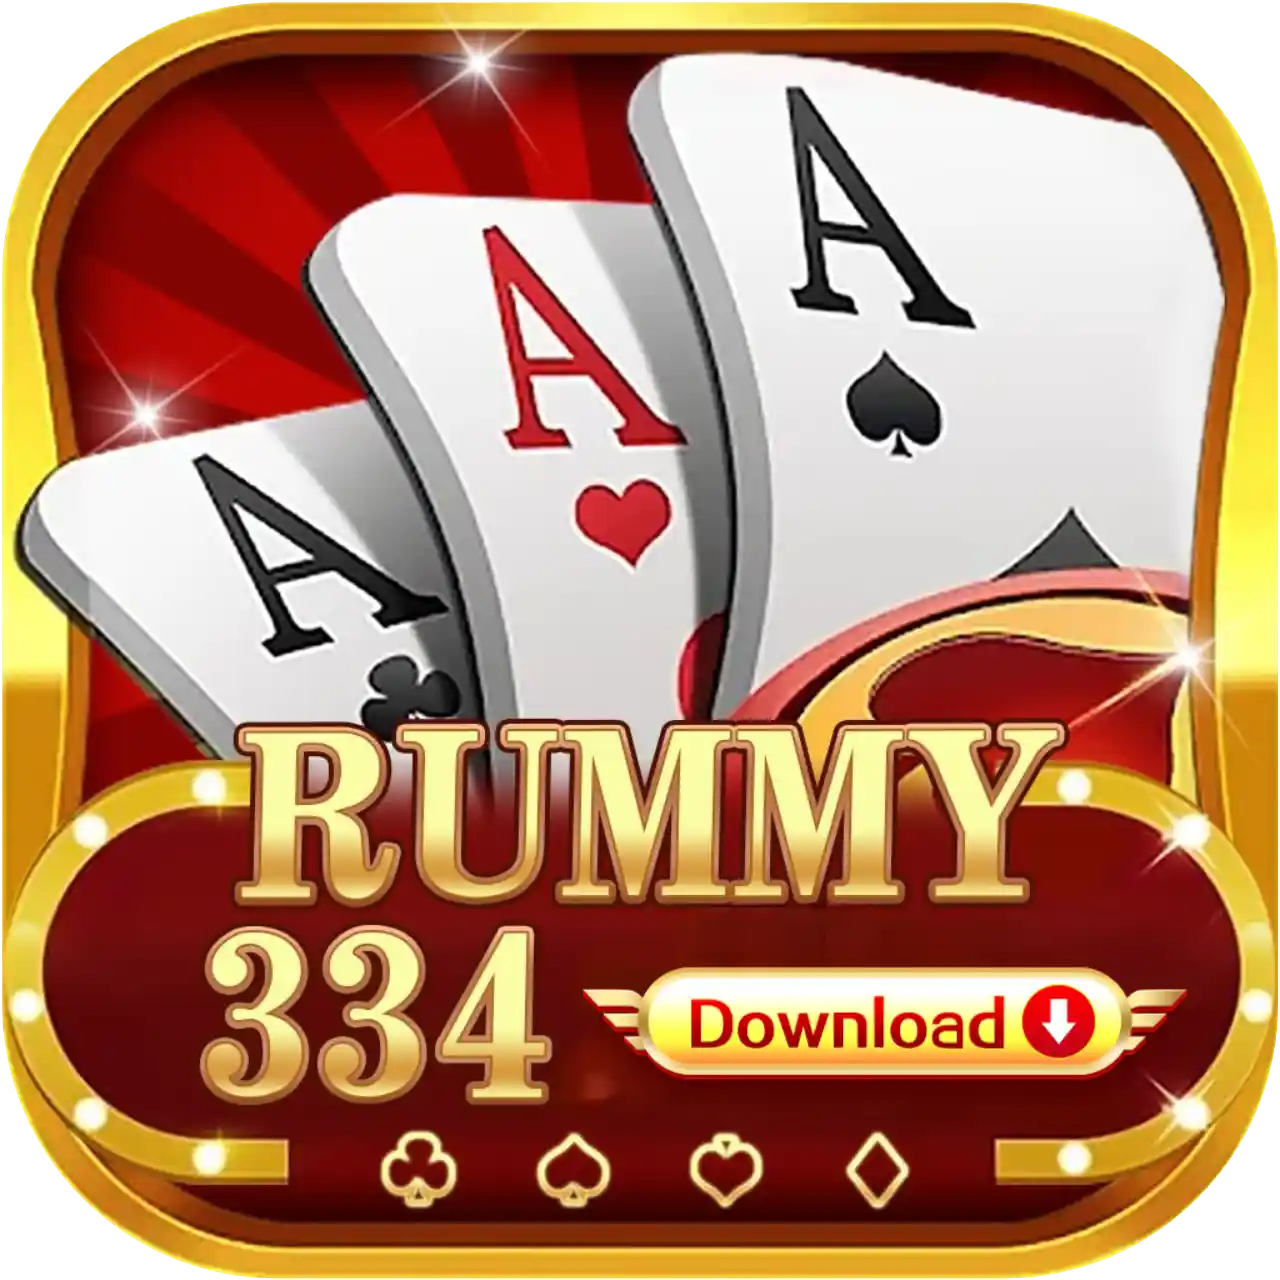 Rummy 334 - All Rummy App